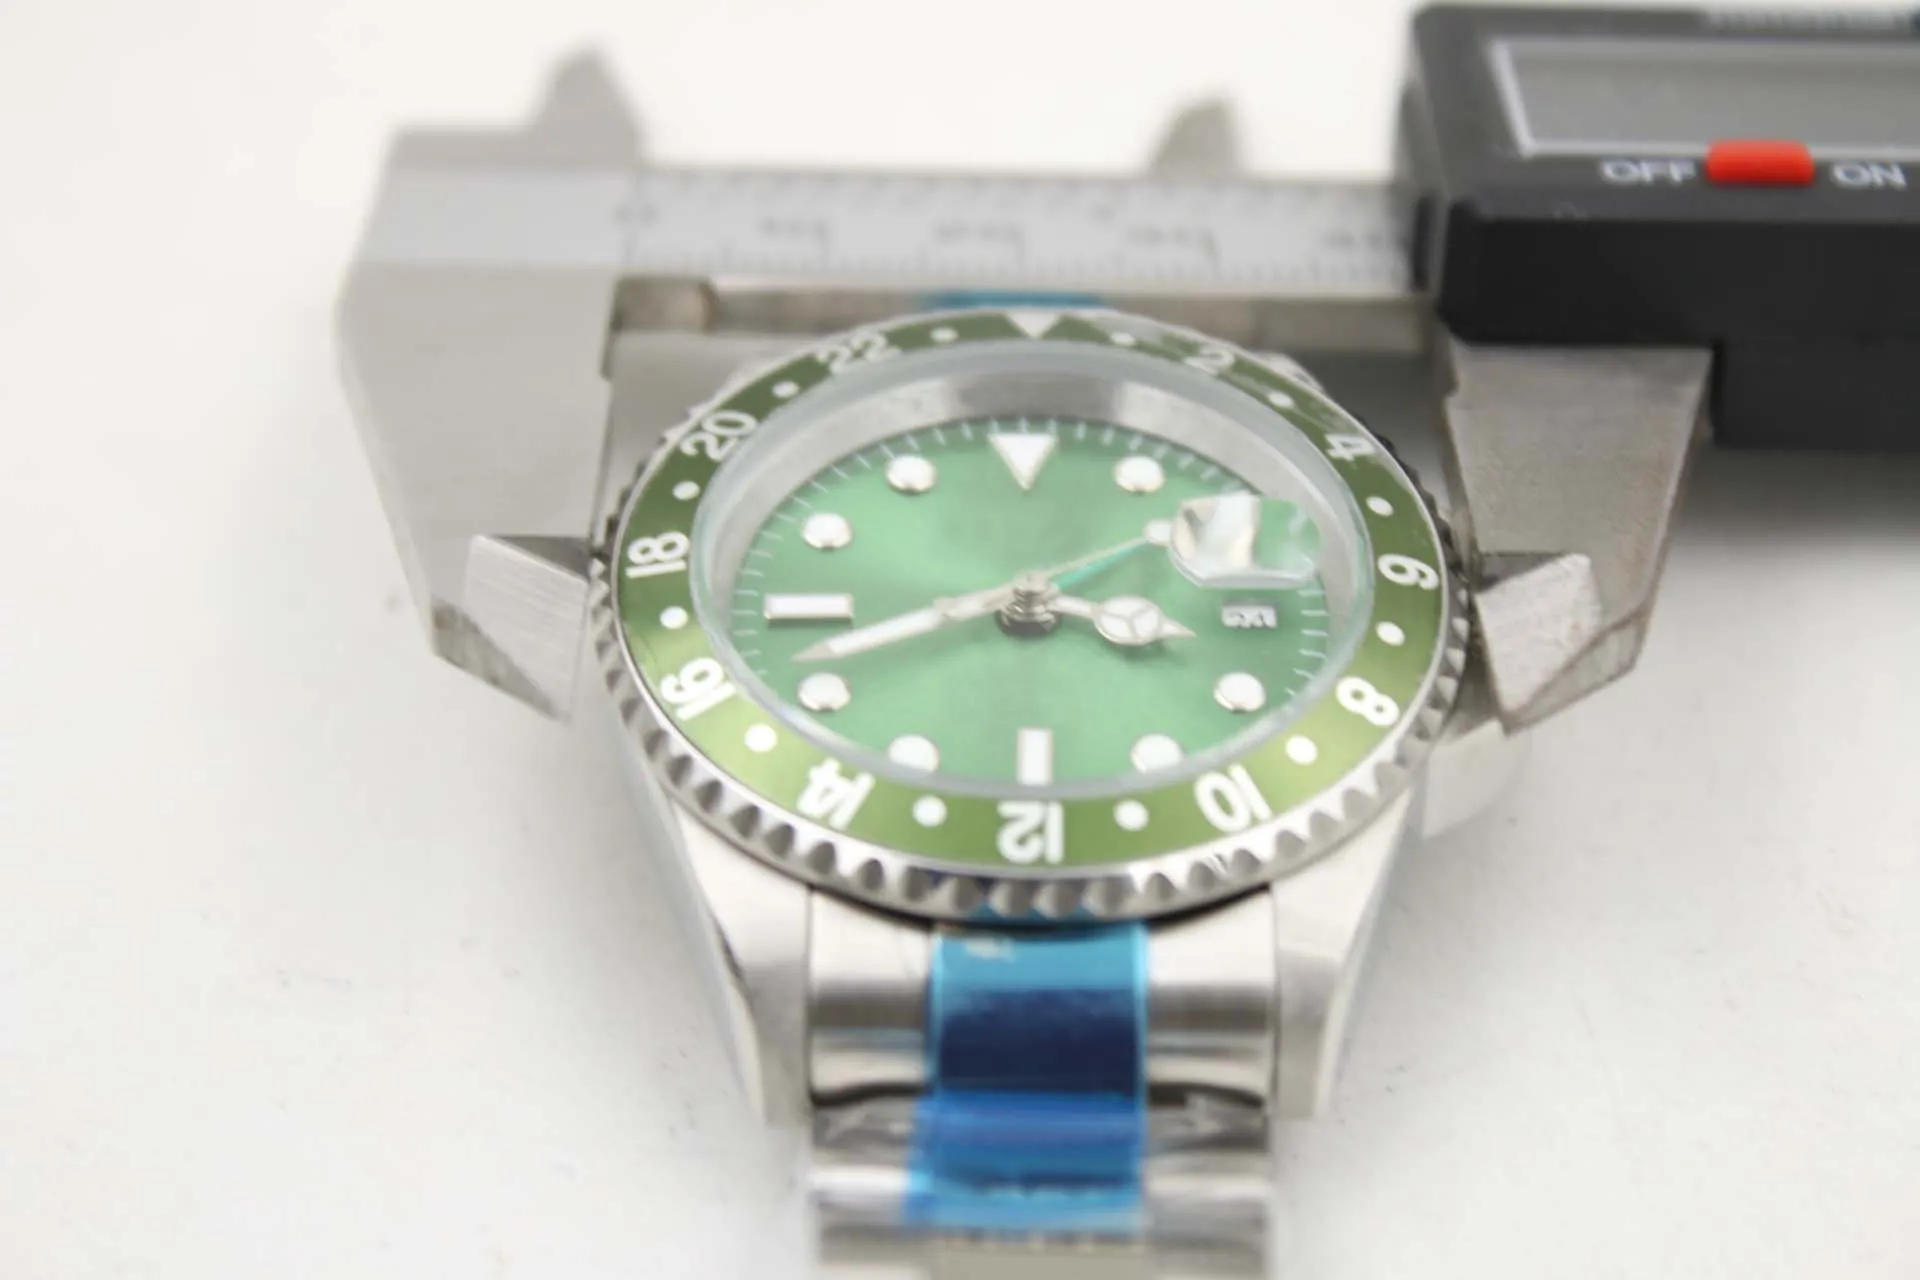 Relógio mecânico masculino 116710 negócios casual moderno prata branco caixa de aço inoxidável verde anel lateral dial 4 pinos 40mm calend236k